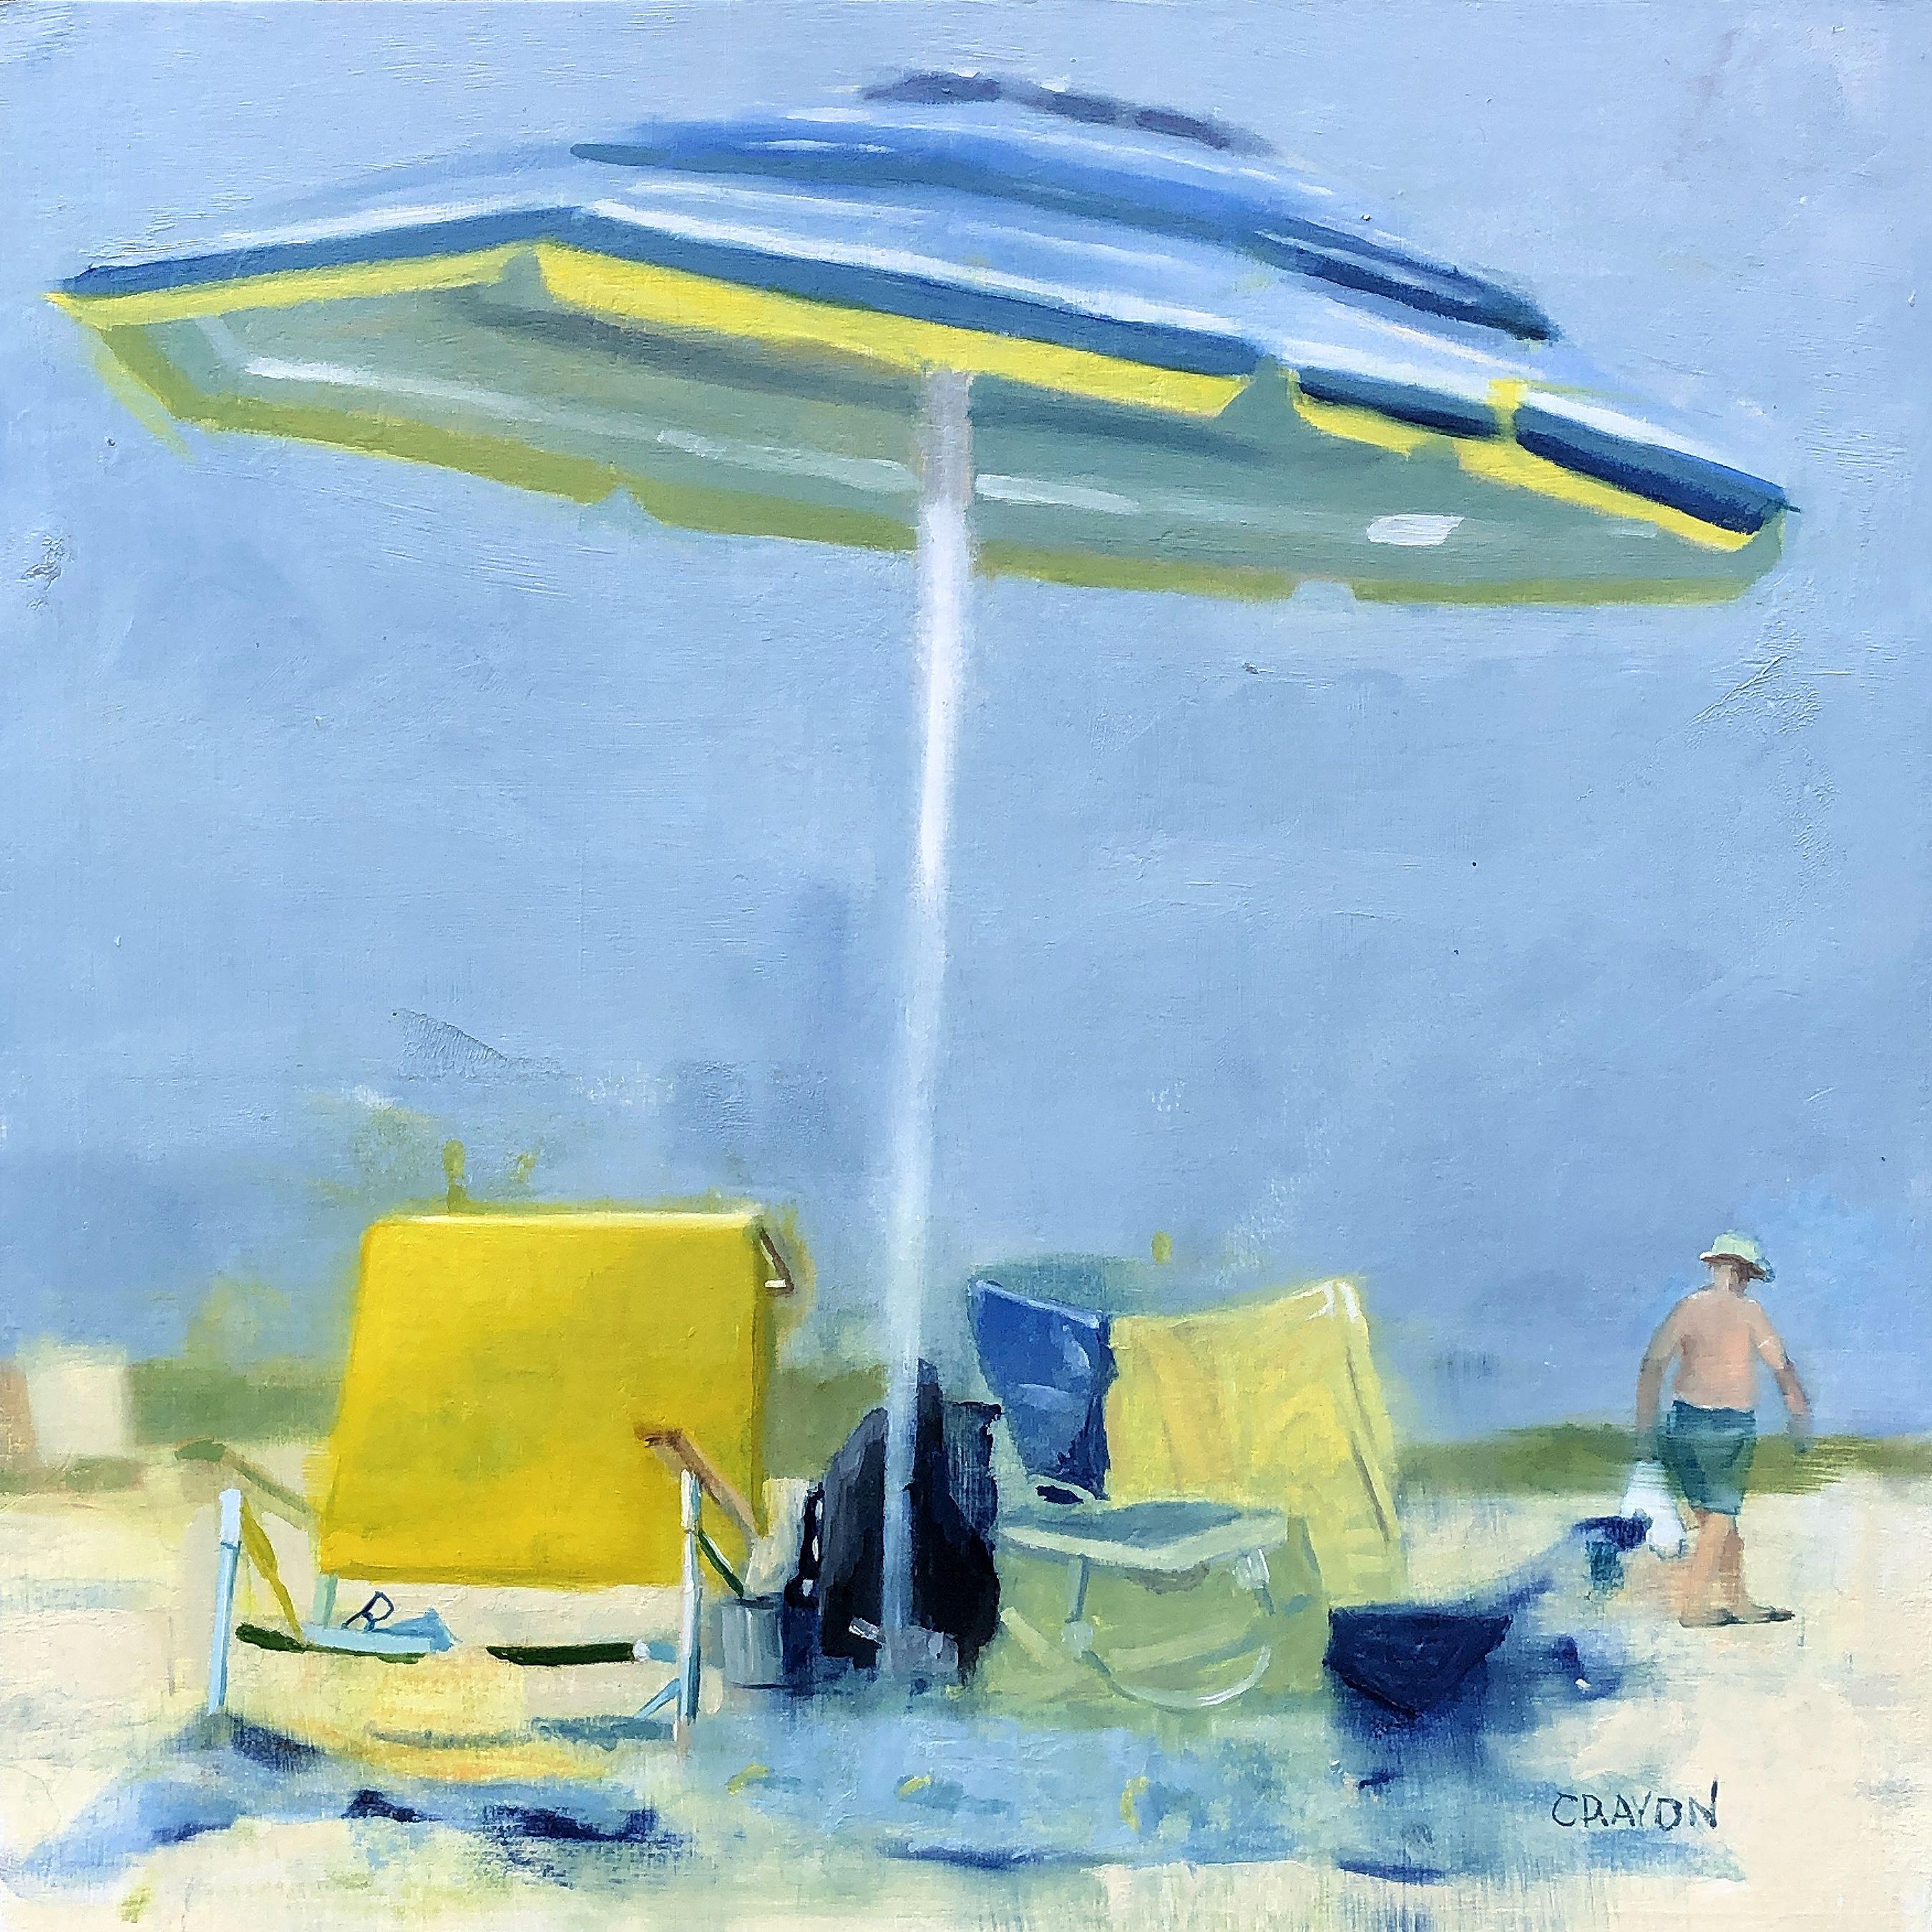 Umbrella by the Ocean, Peinture, Huile sur Panneau de Bois - Painting de Dennis Crayon